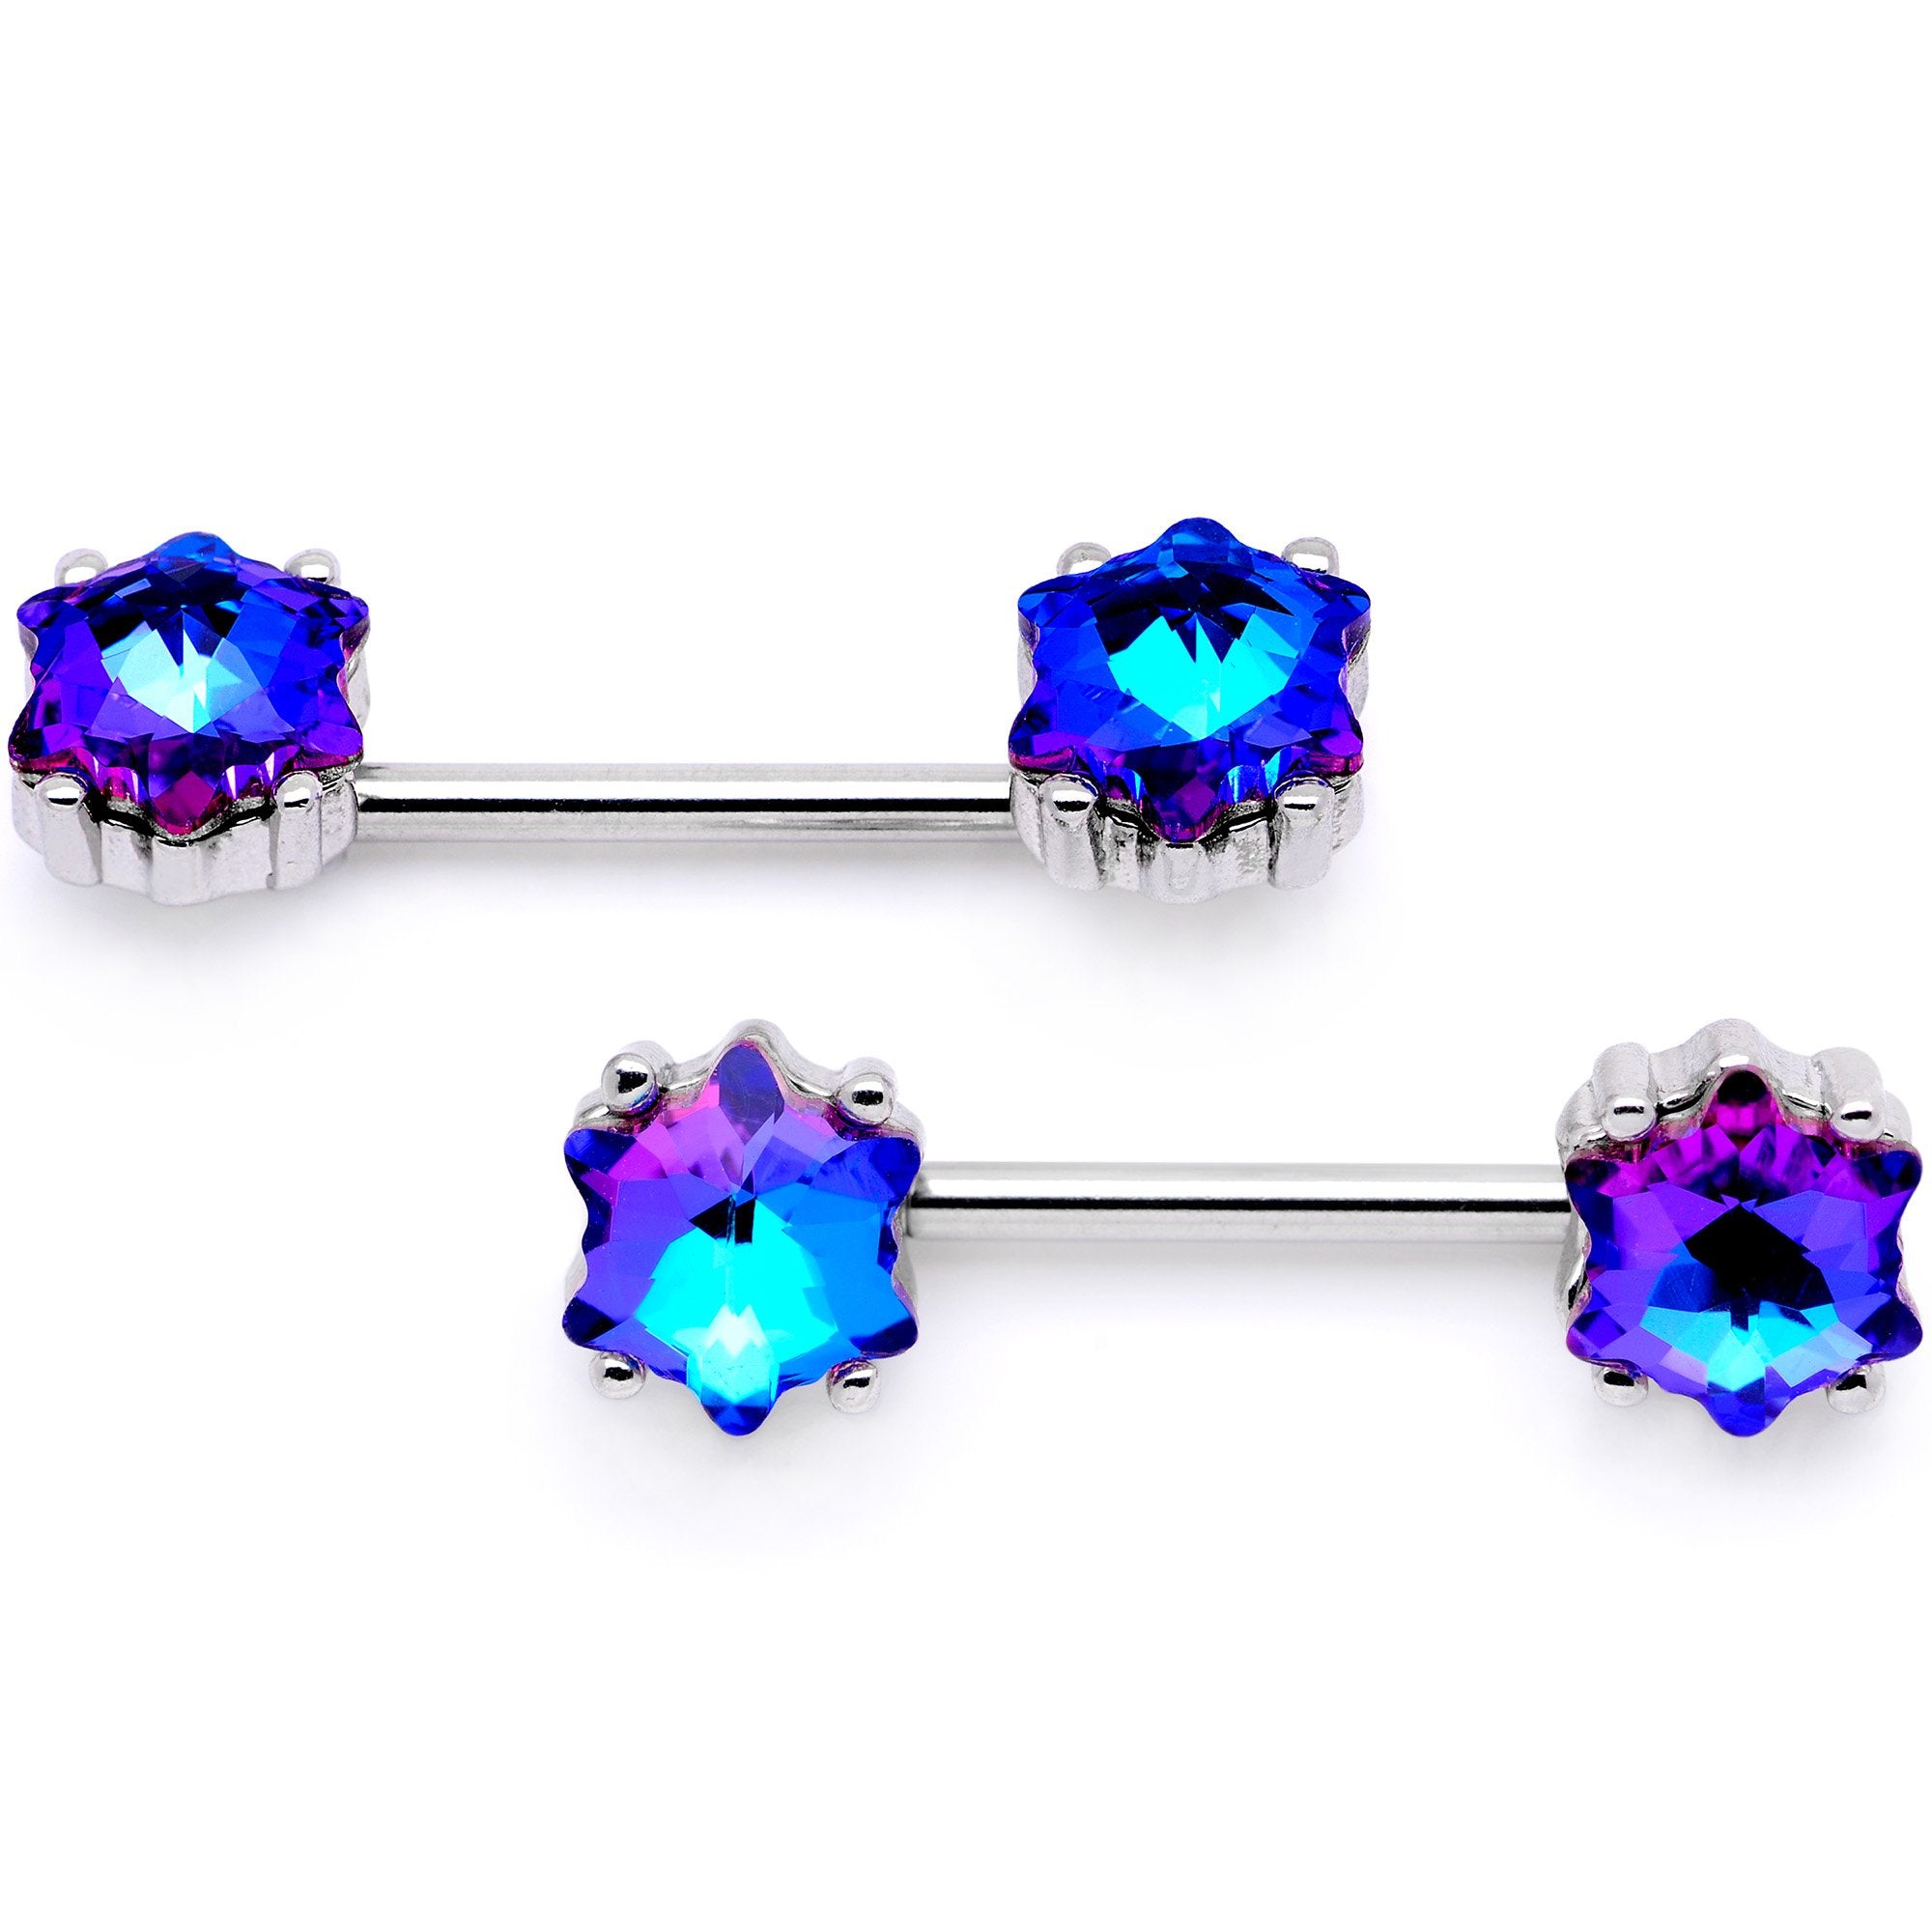 14 Gauge Blue Gem Supernova Captive Ring Barbell Nipple Ring Set